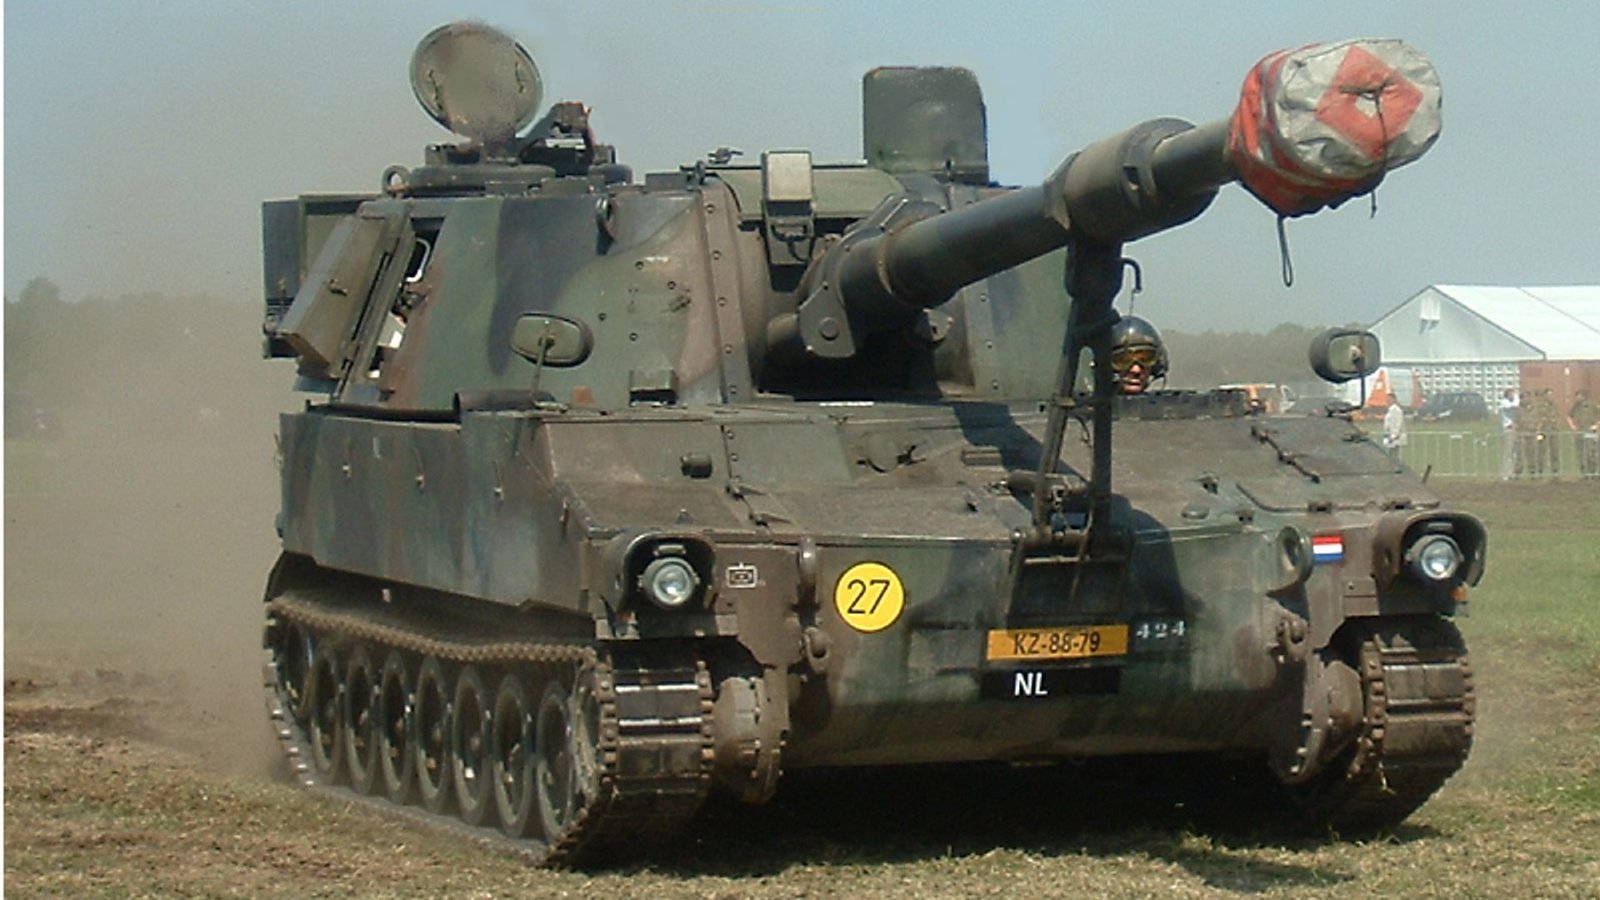 USA: Die M109 ist eine Panzerhaubitze  aus US-amerikanischer Produktion. Ihre Entwicklung begann zur Zeit des Kalten Krieges in den 1950er-Jahren. Seit 1962 wurde sie Bestandteil der Artillerieverbände vieler Staaten und Standard-Panzerhaubitze der Nato. Bis zu ihrer Ablösung durch die Panzerhaubitze 2000 im Jahr 2007 war die M109 auch beim Heer der Bundeswehr im Einsatz. Sie könnte aus Altbeständen auch an die Ukraine geliefert werden.Foto: Wikipedia commons/Quistnix/CC BY 2.0